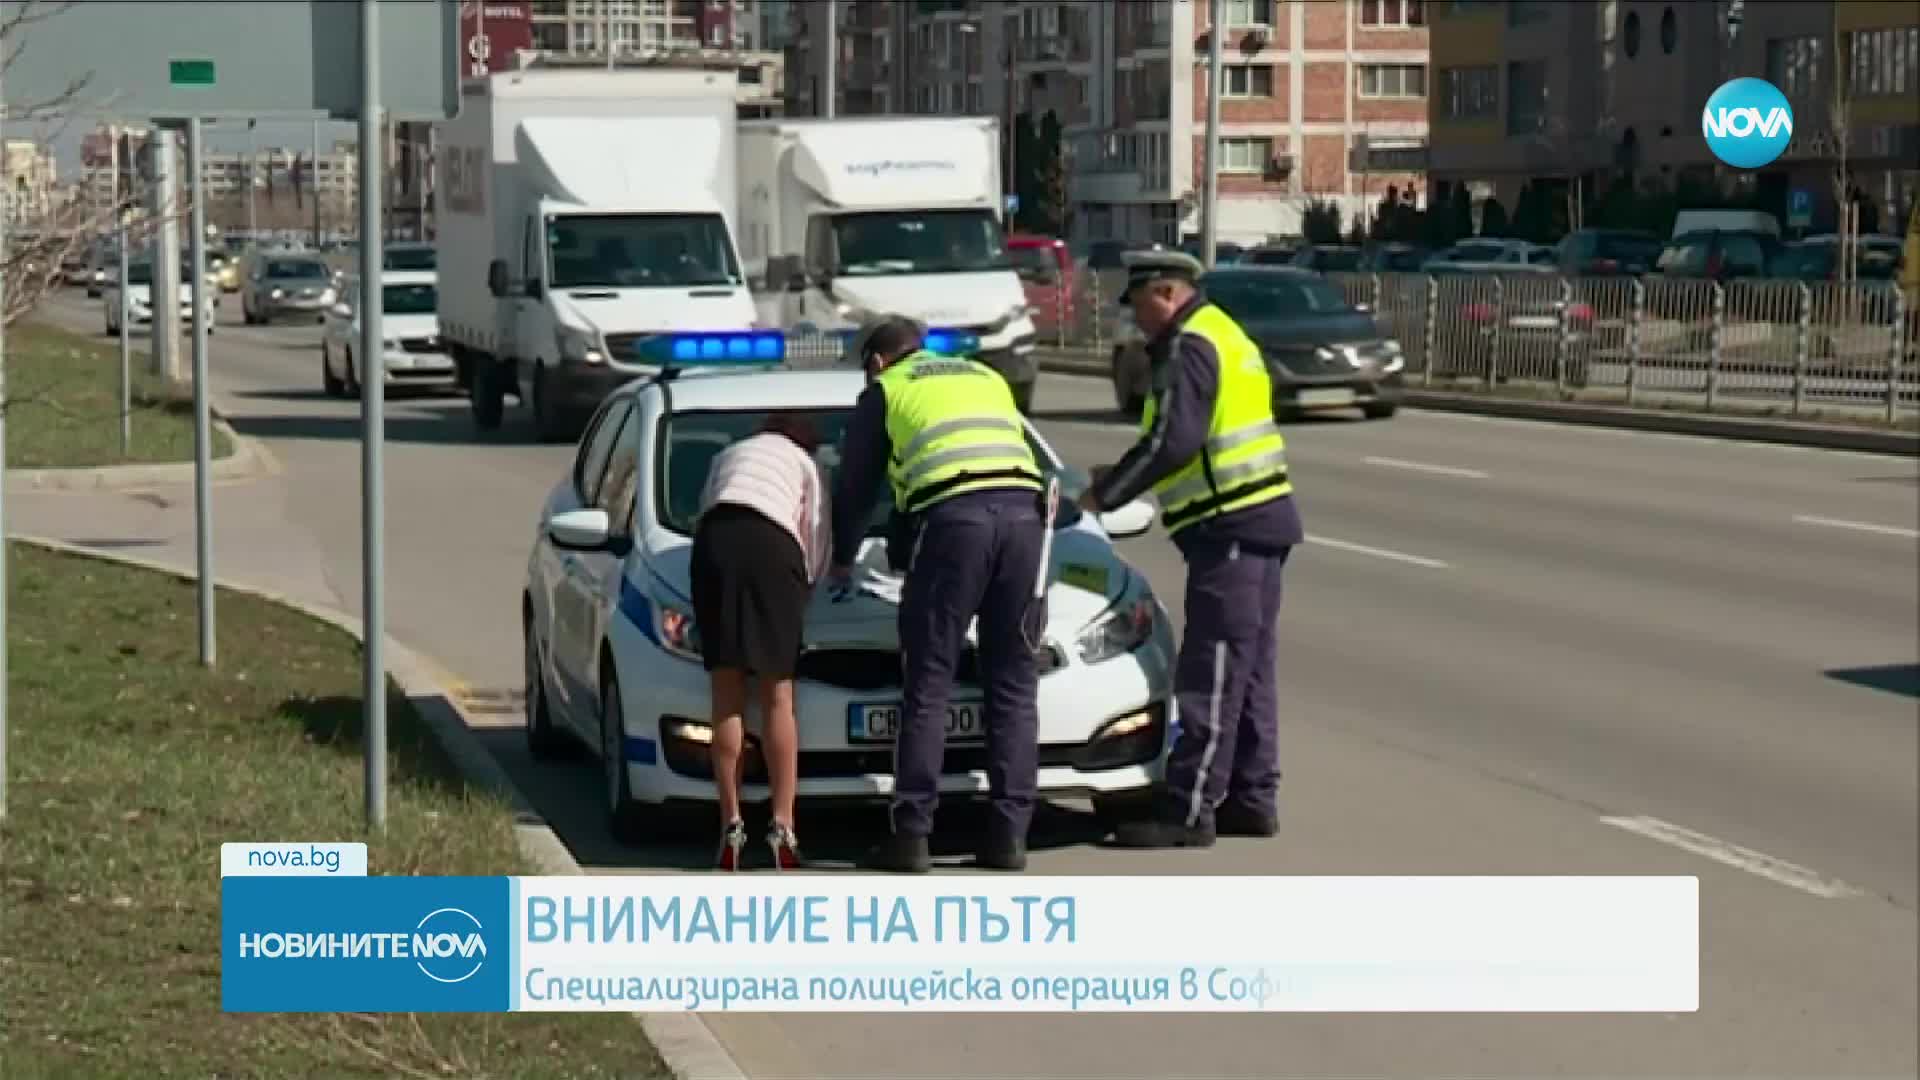 ВНИМАНИЕ НА ПЪТЯ: Започва полицейска операция в София